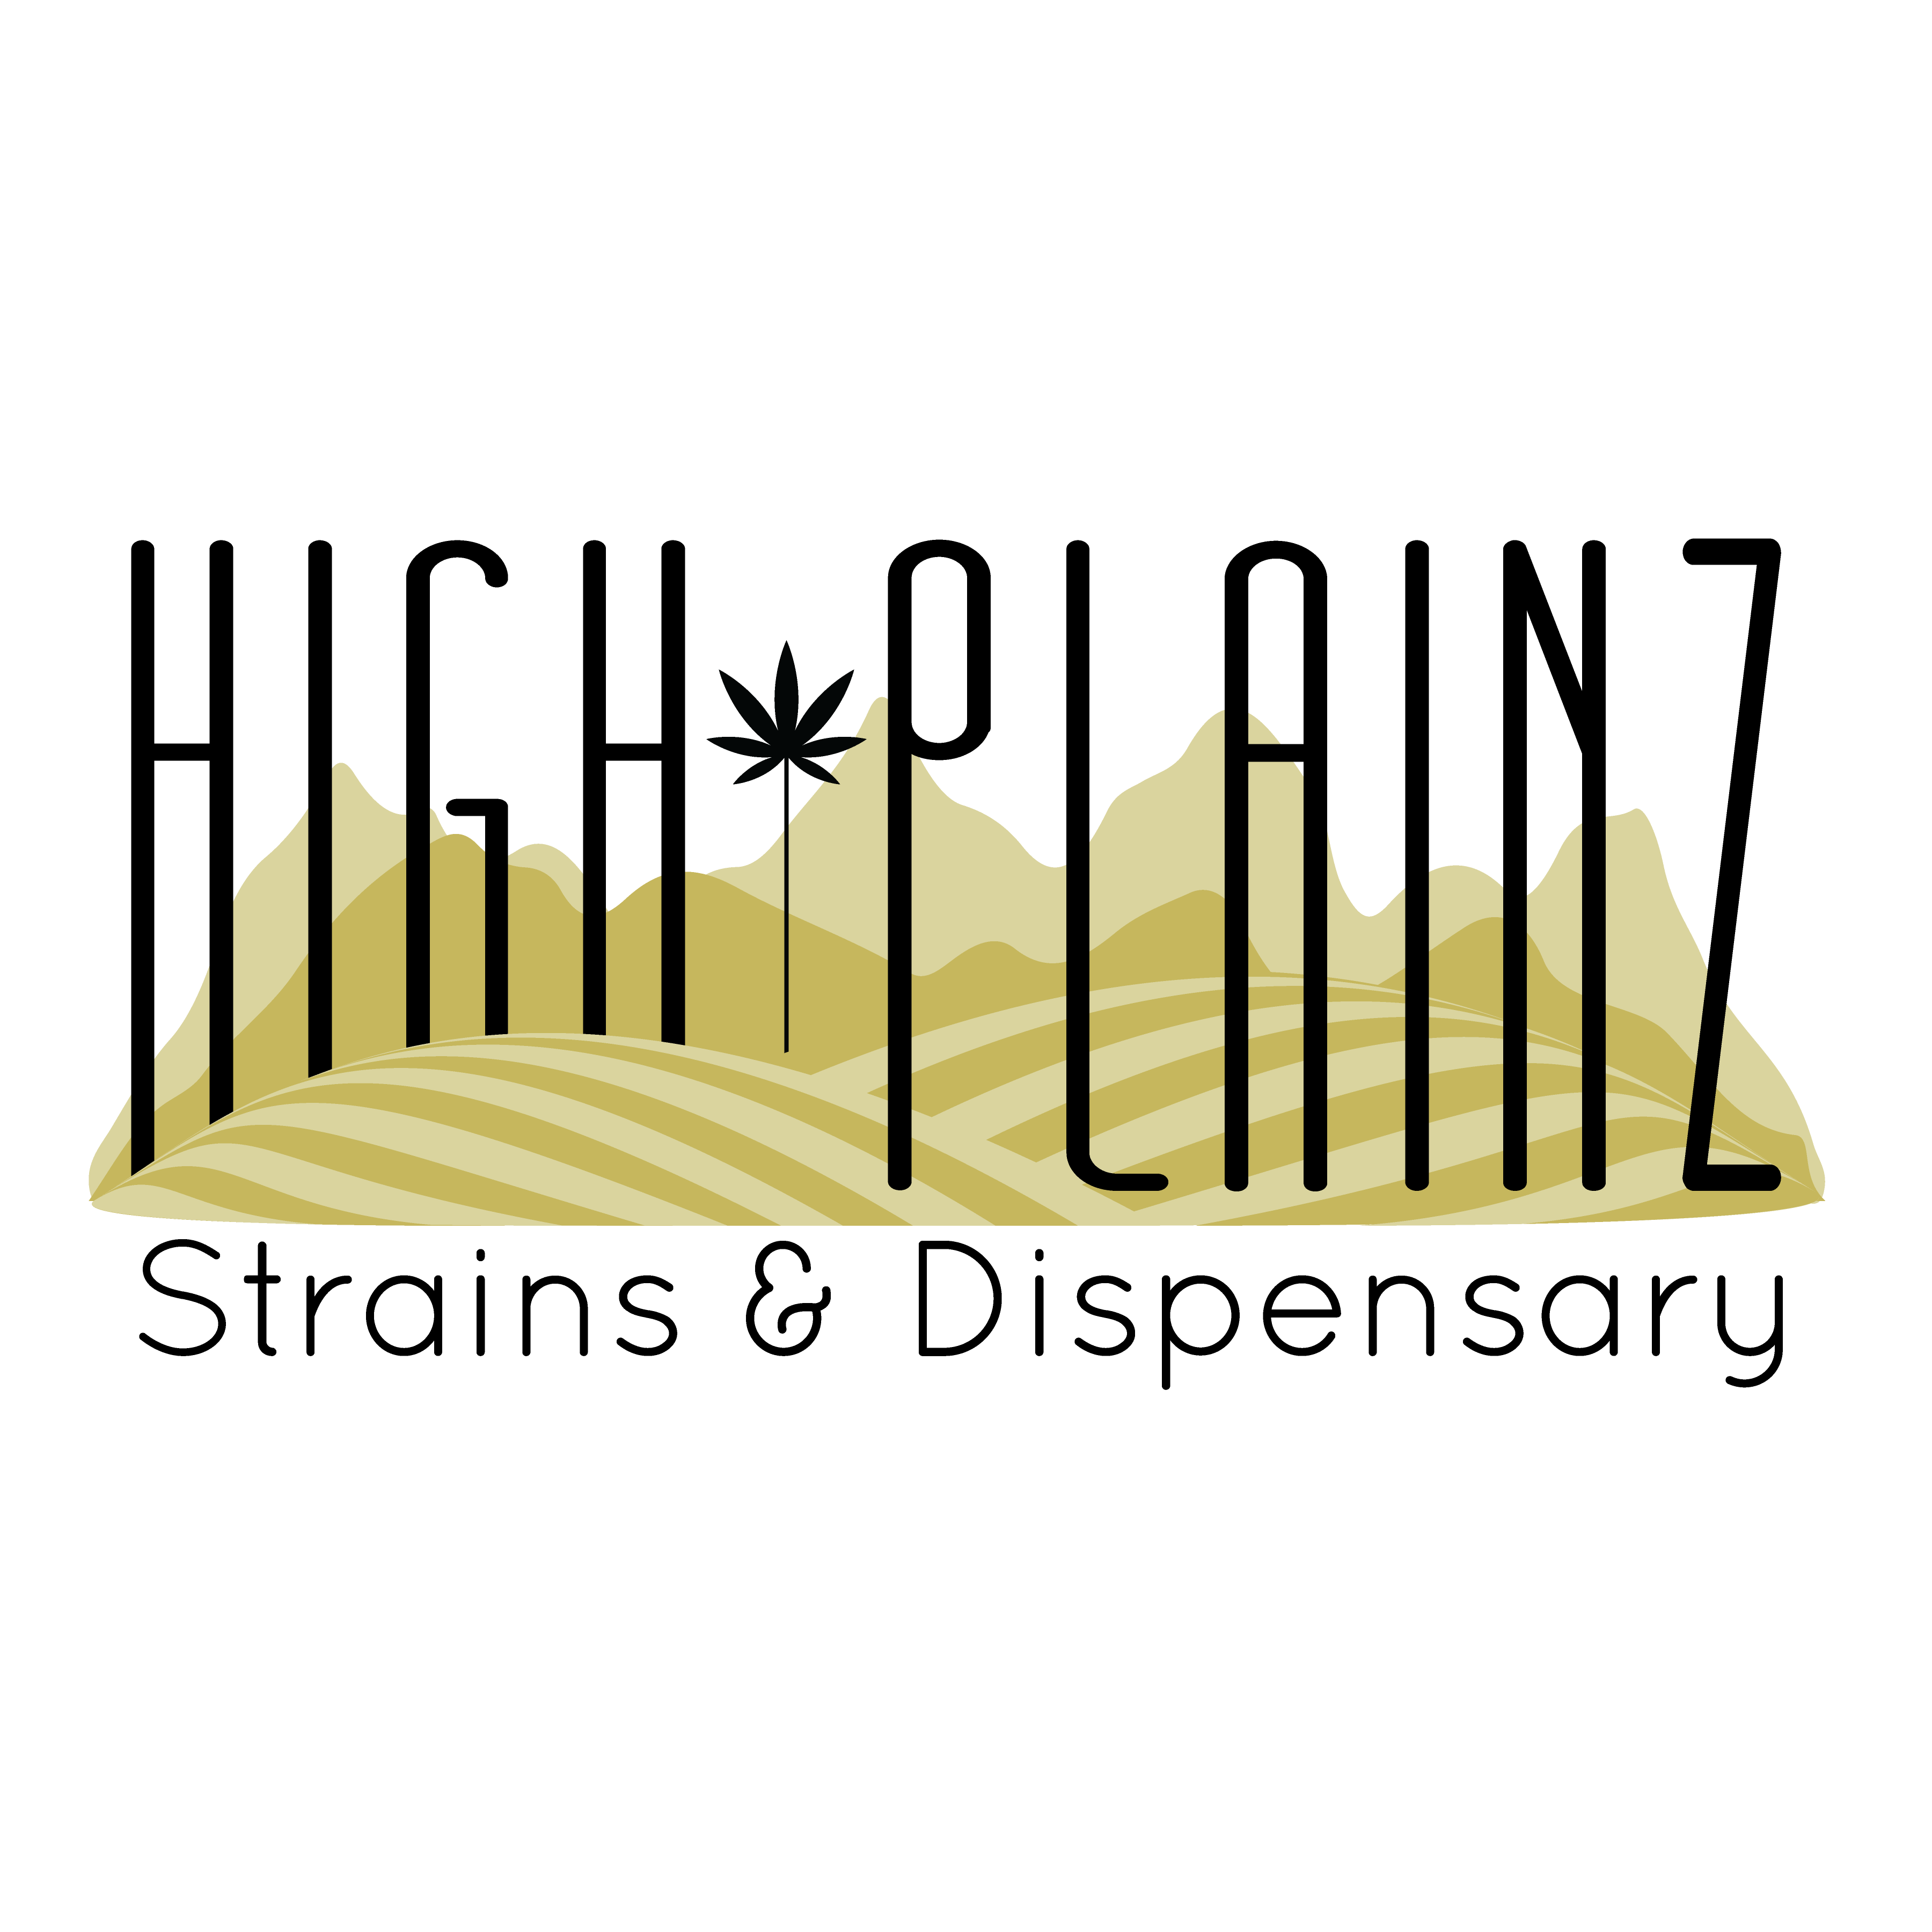 High Plainz Strains & Dispensary - Medical Marijuana Doctors - Cannabizme.com